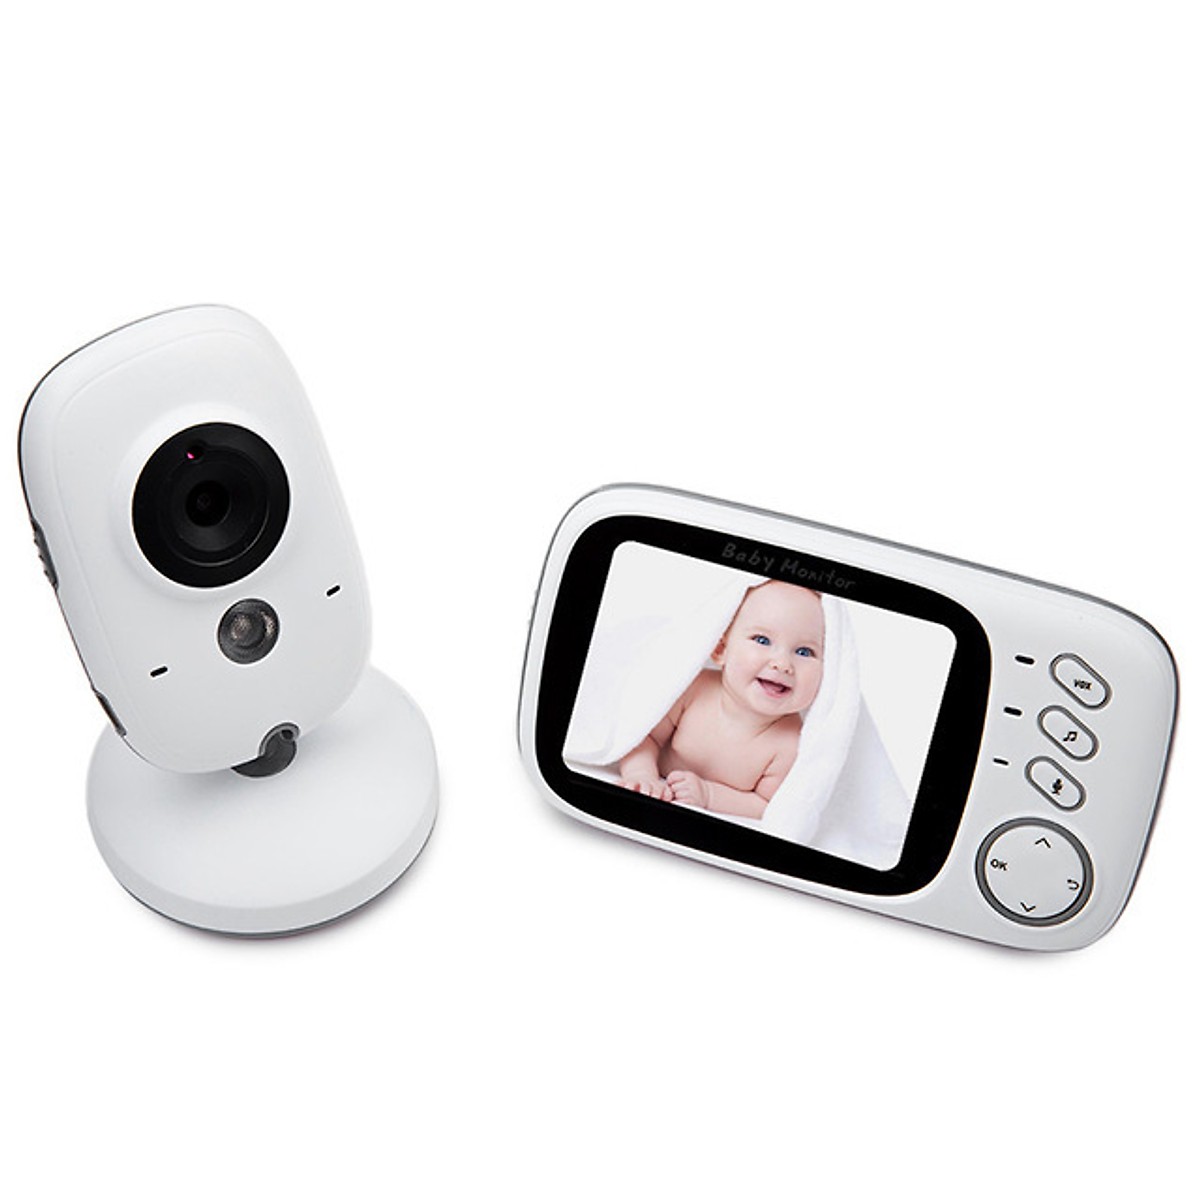 Bộ camera mini báo khóc baby thông minh VB603 màn hình LCD đa năng cao cấp (Tặng đèn pin sạc cơ tay -giao màu ngẫu nhiên)